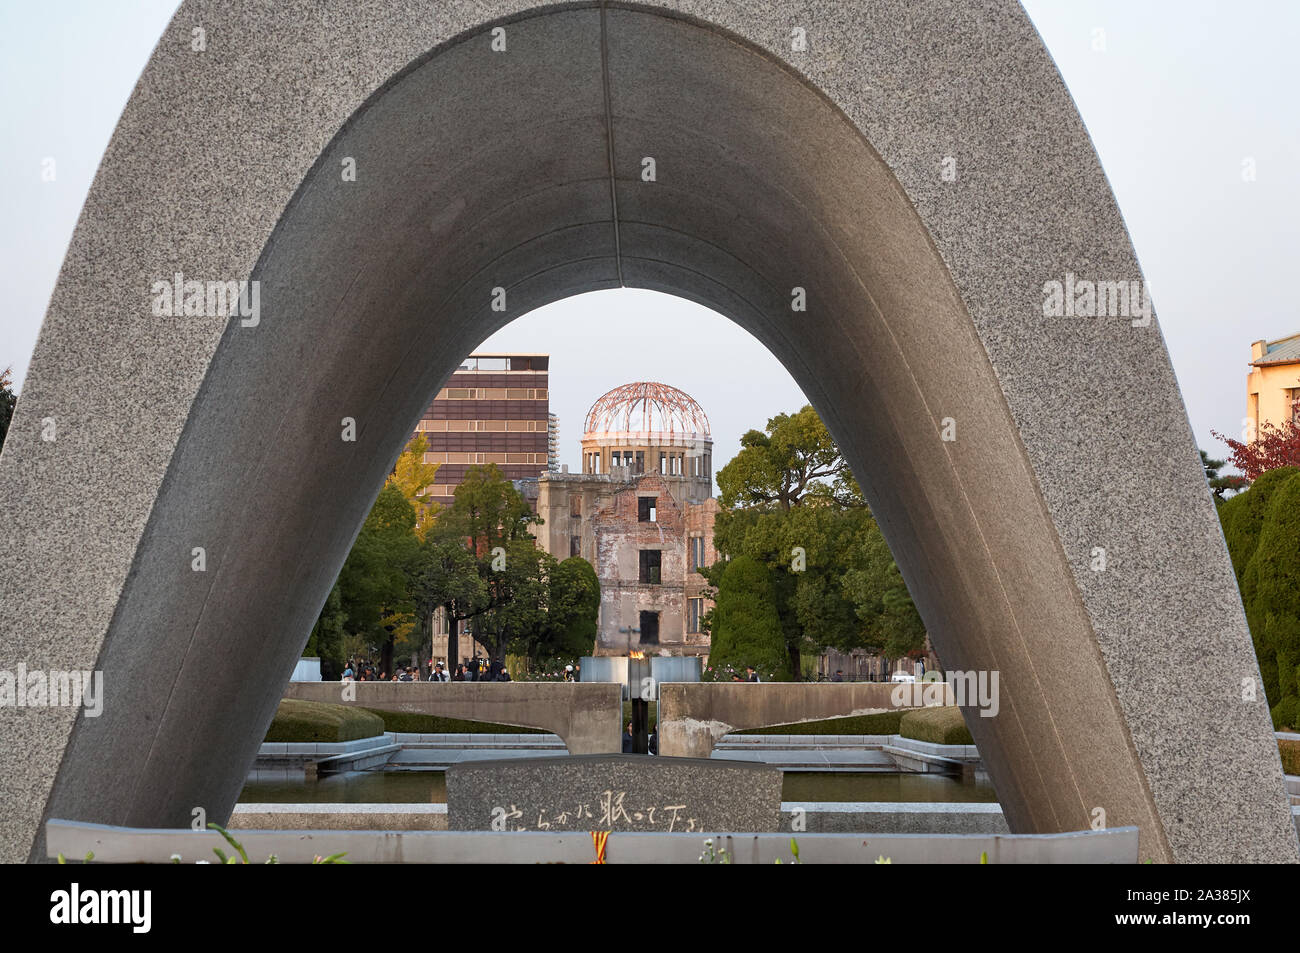 HIROSHIMA, JAPON - 23 NOVEMBRE 2007 : l'avis de dôme de la bombe atomique à travers l'arche du cénotaphe de for the A-bomb Victims dans le parc de la paix. Hiroshi Banque D'Images